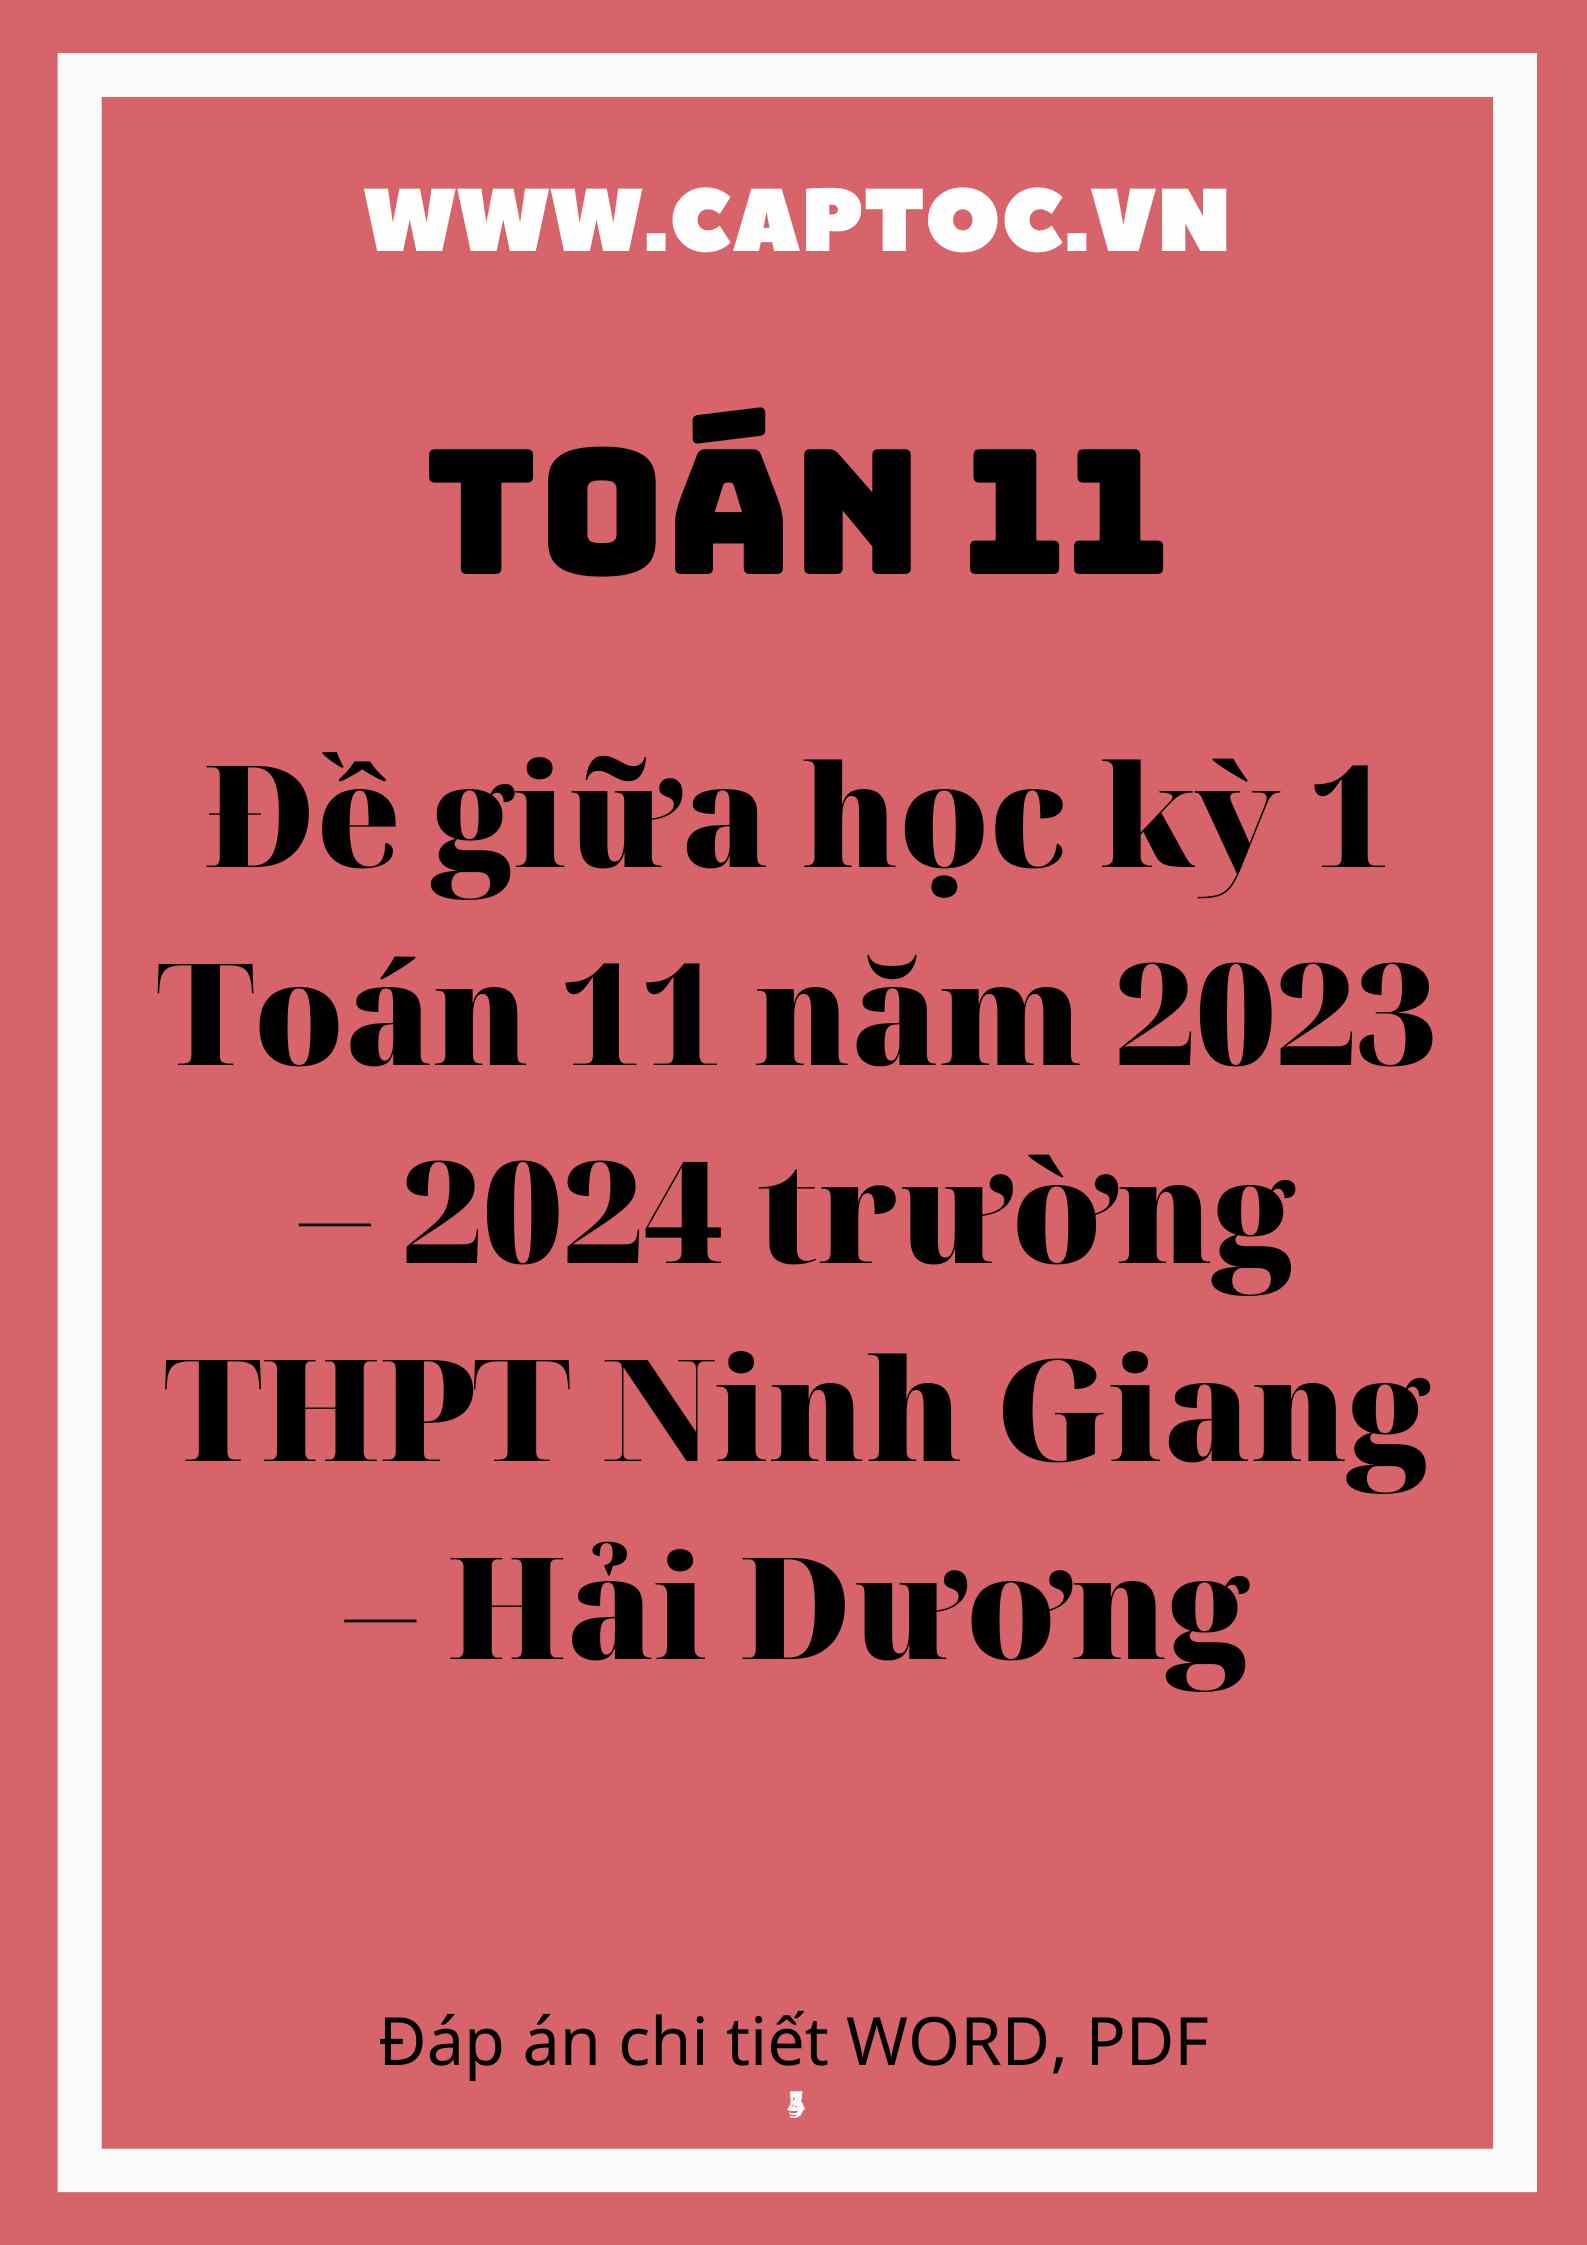 Đề giữa học kỳ 1 Toán 11 năm 2023 – 2024 trường THPT Ninh Giang – Hải Dương